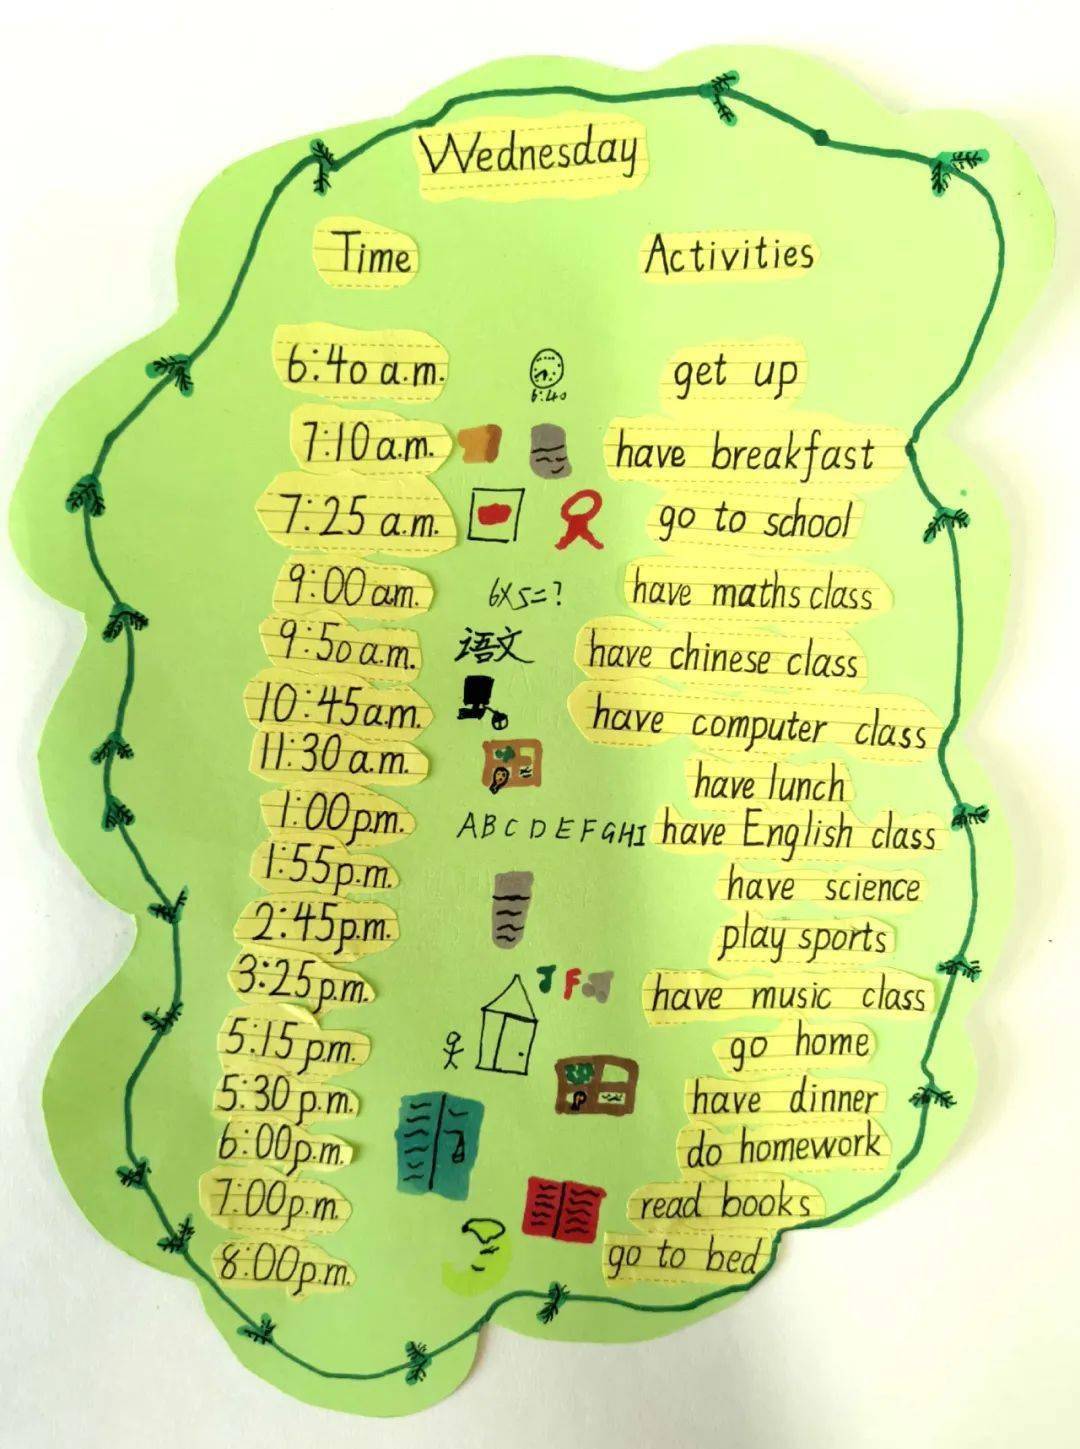 学生设计的timetable课堂上出示学生熟悉的作息时间表和课程表,运用